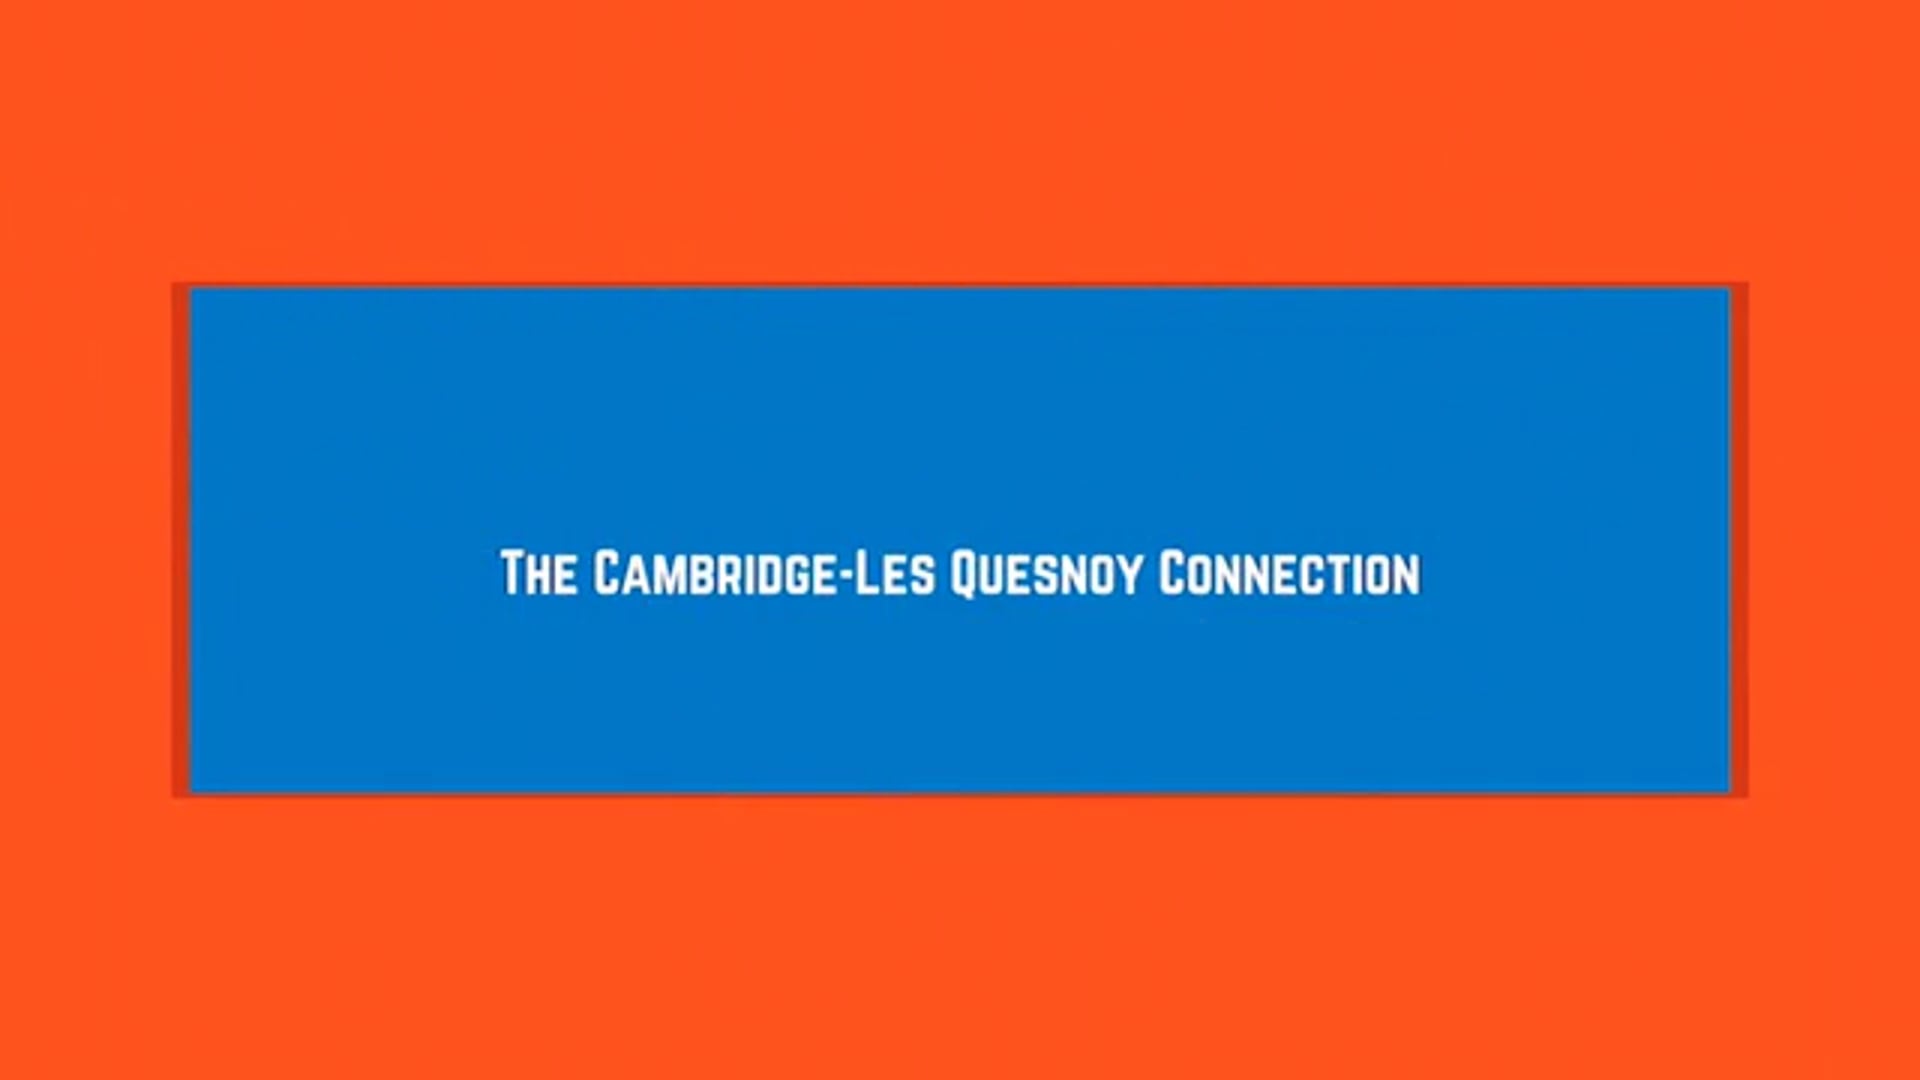 The Cambridge-Les Quesnoy Connection